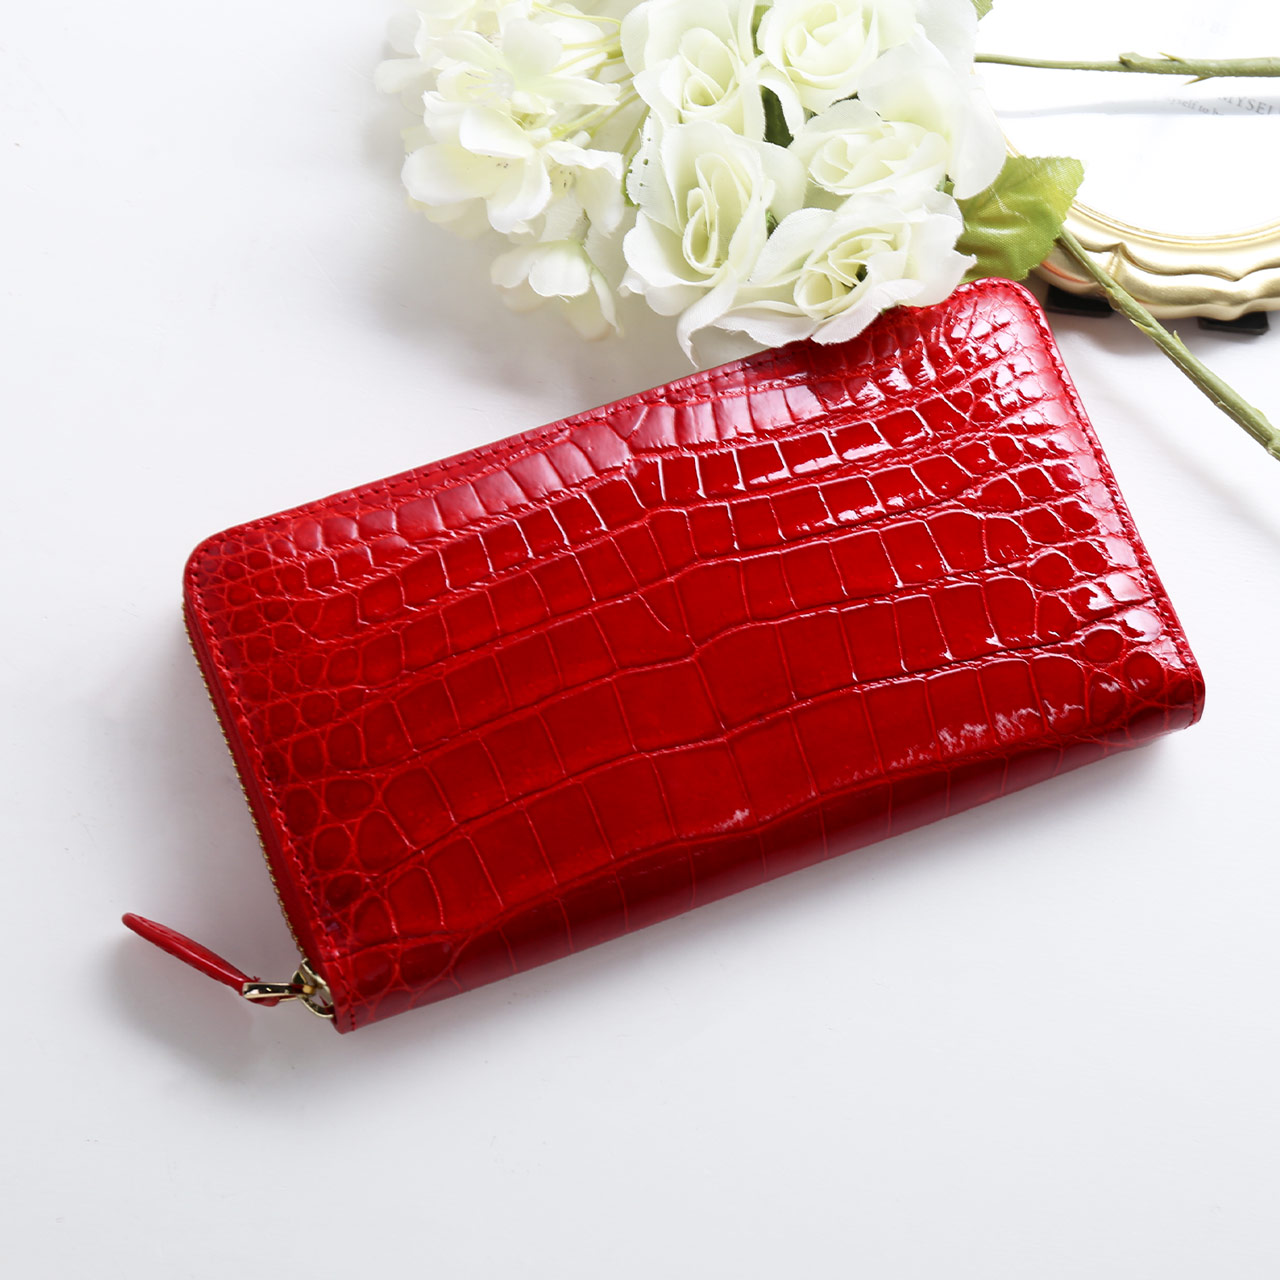 シャイニング クロコダイル 本物 クロコ 財布 レディース 女性 長財布 使いやすい 大容量 一枚取り ピンク 赤 レッド 長サイフ プレゼント  ギフト (06001780r)